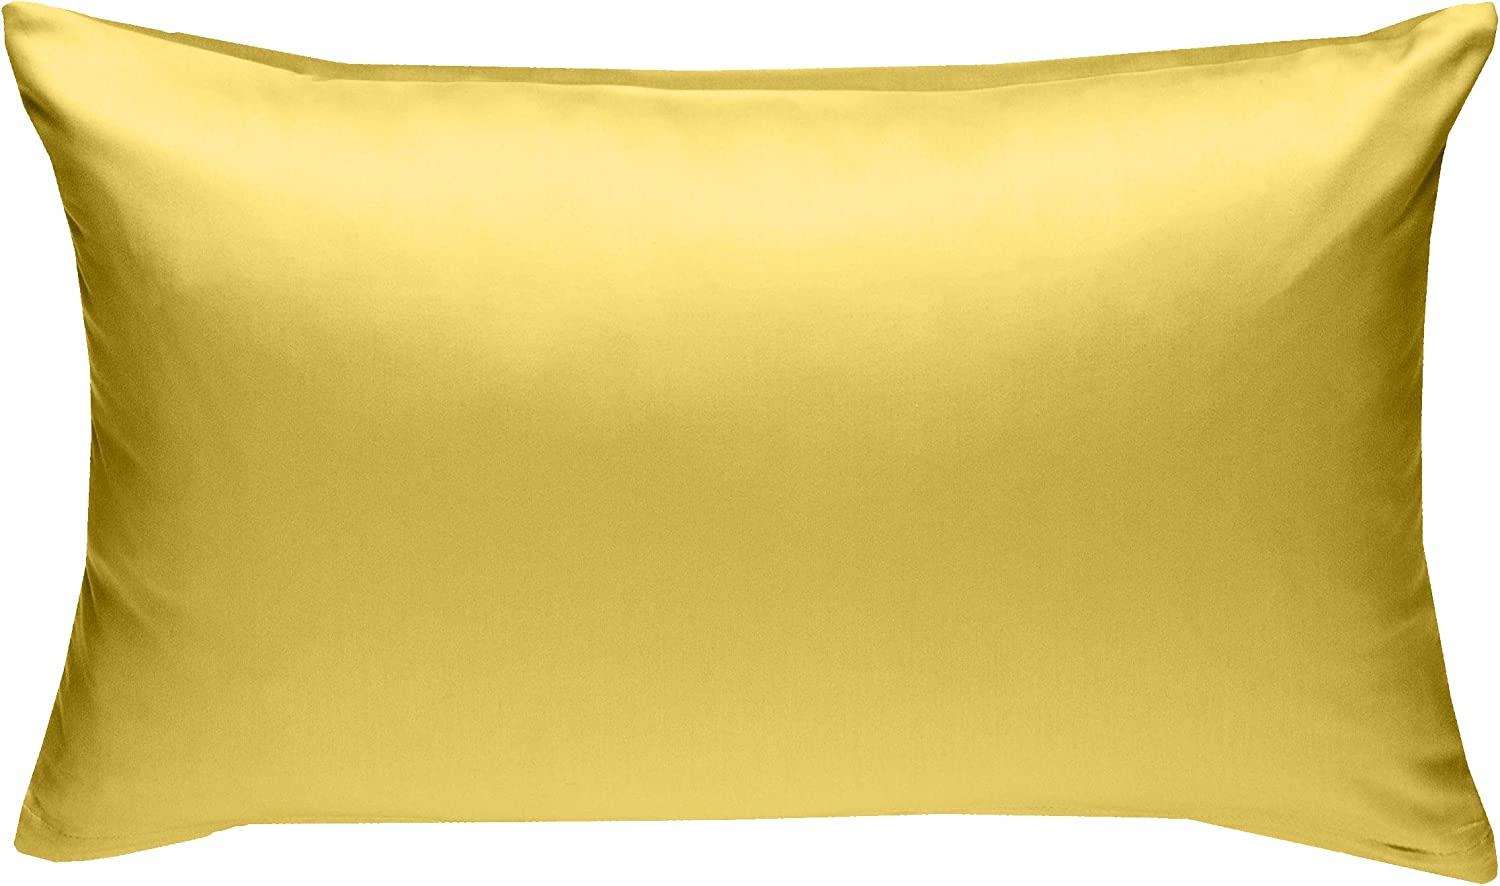 Bettwaesche-mit-Stil Mako-Satin / Baumwollsatin Bettwäsche uni / einfarbig gelb Kissenbezug 60x80 cm Bild 1